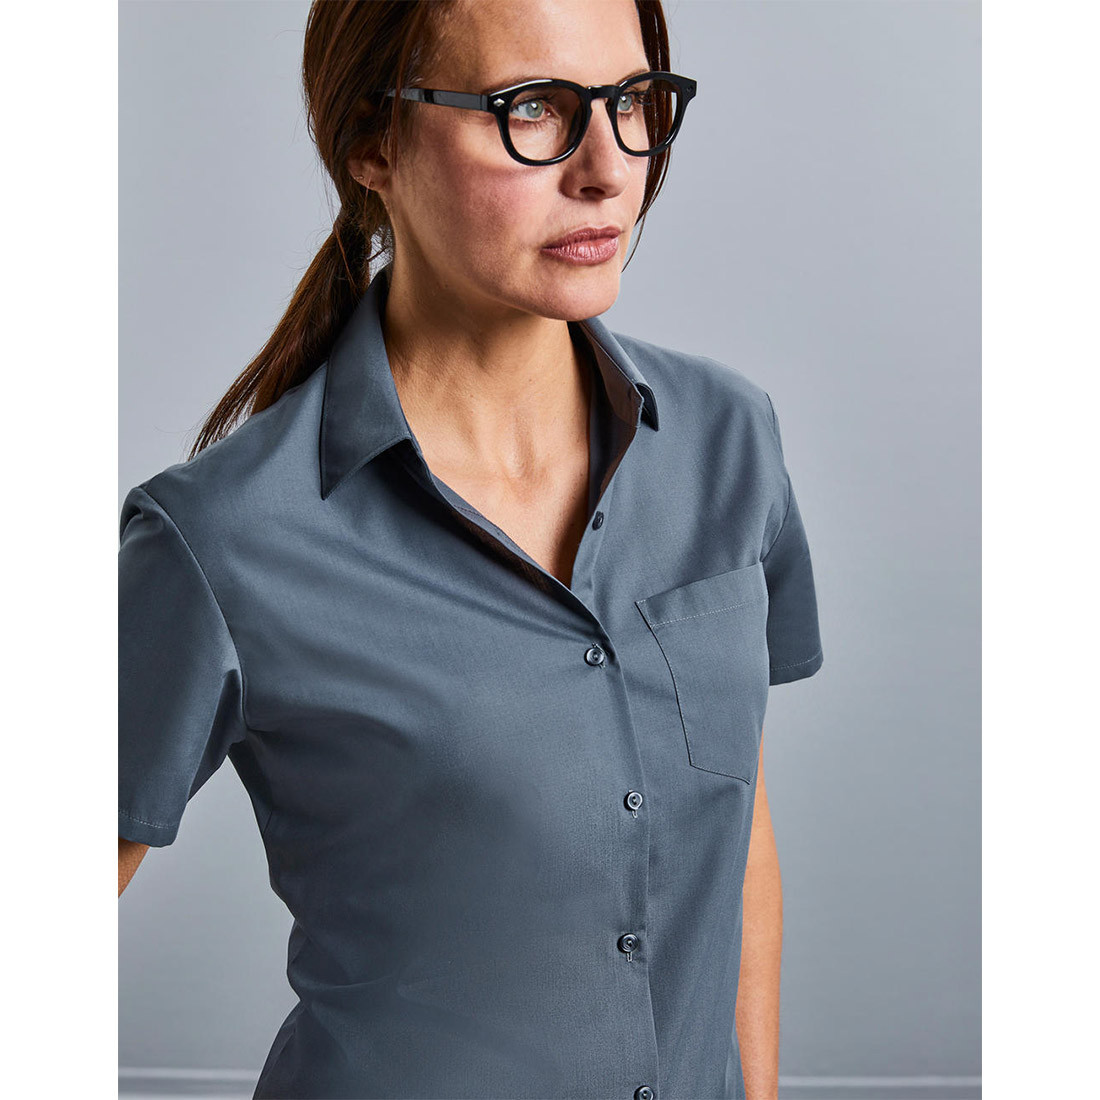 Camicia donna popeline maniche corte - Abbigliamento di protezione